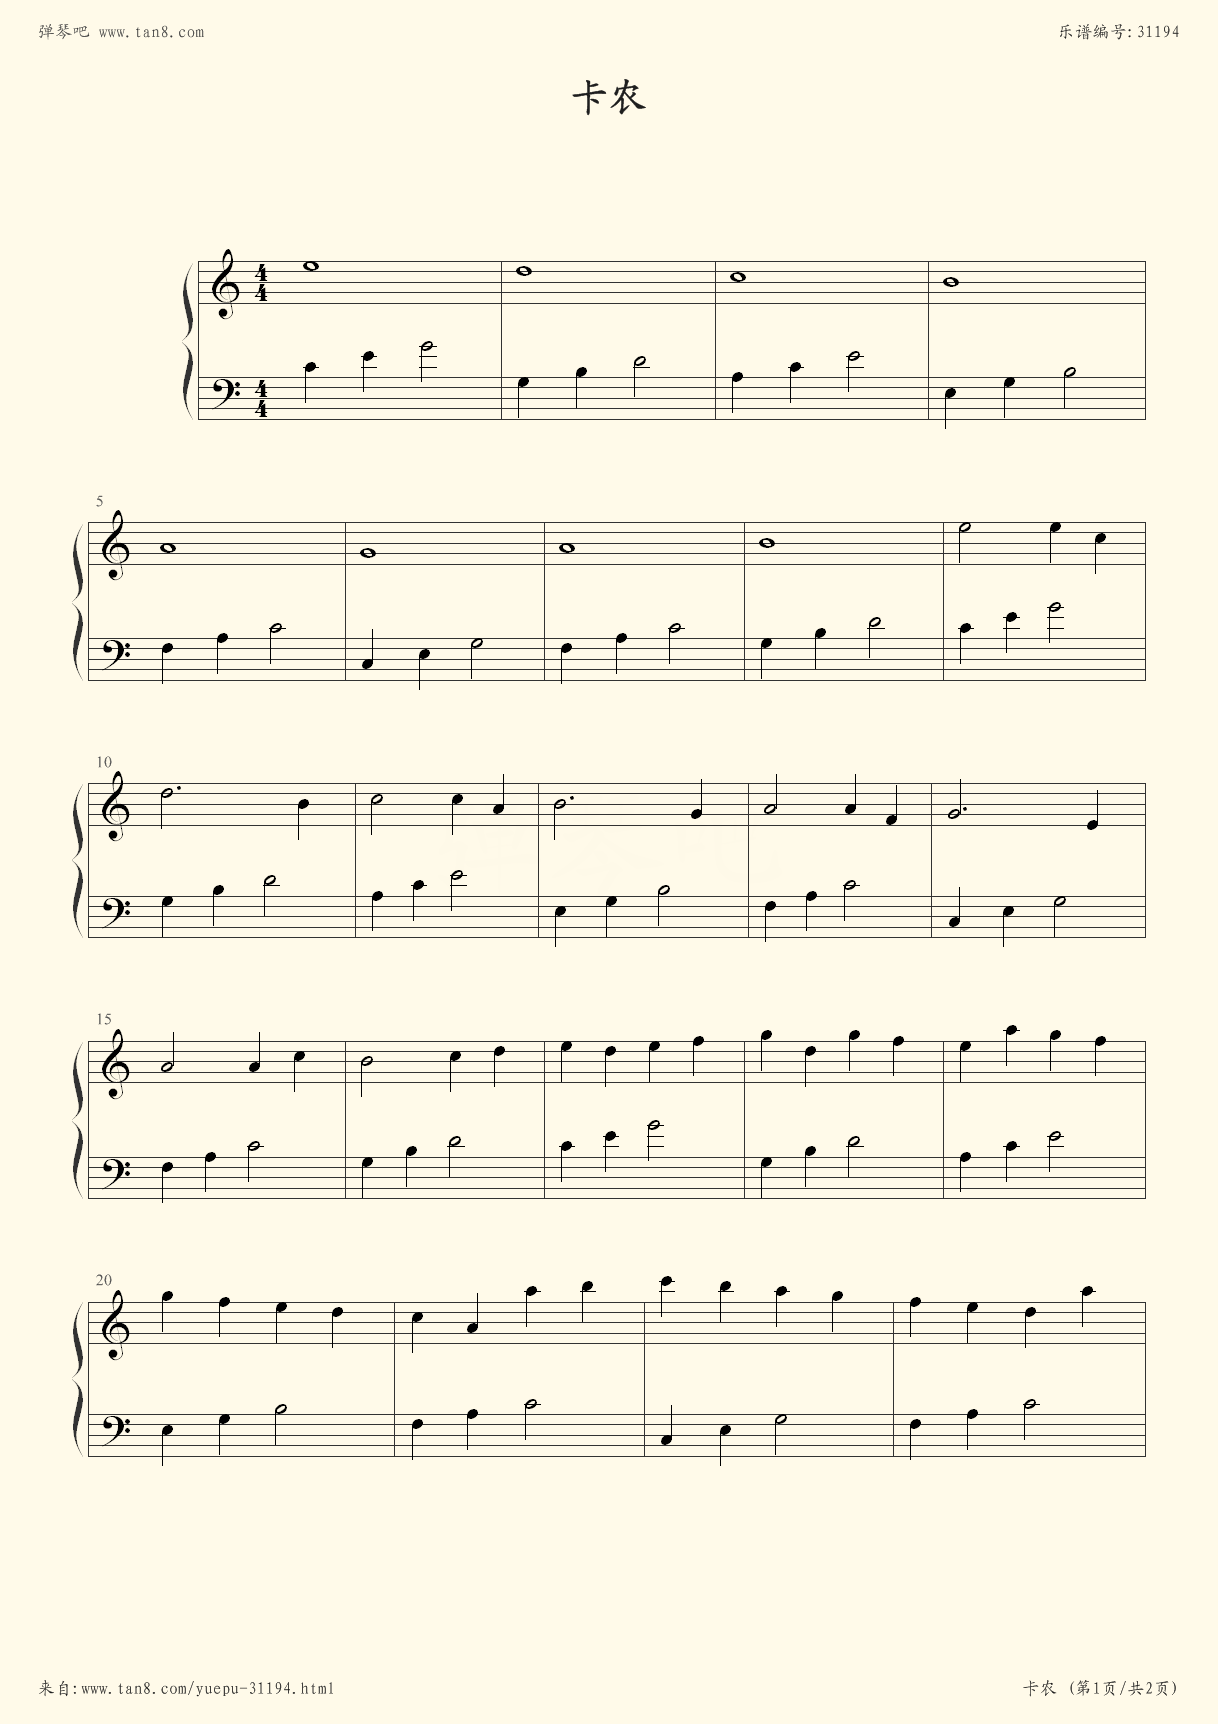 卡农钢琴谱简单版带指法(卡农初学版钢琴谱带指法)